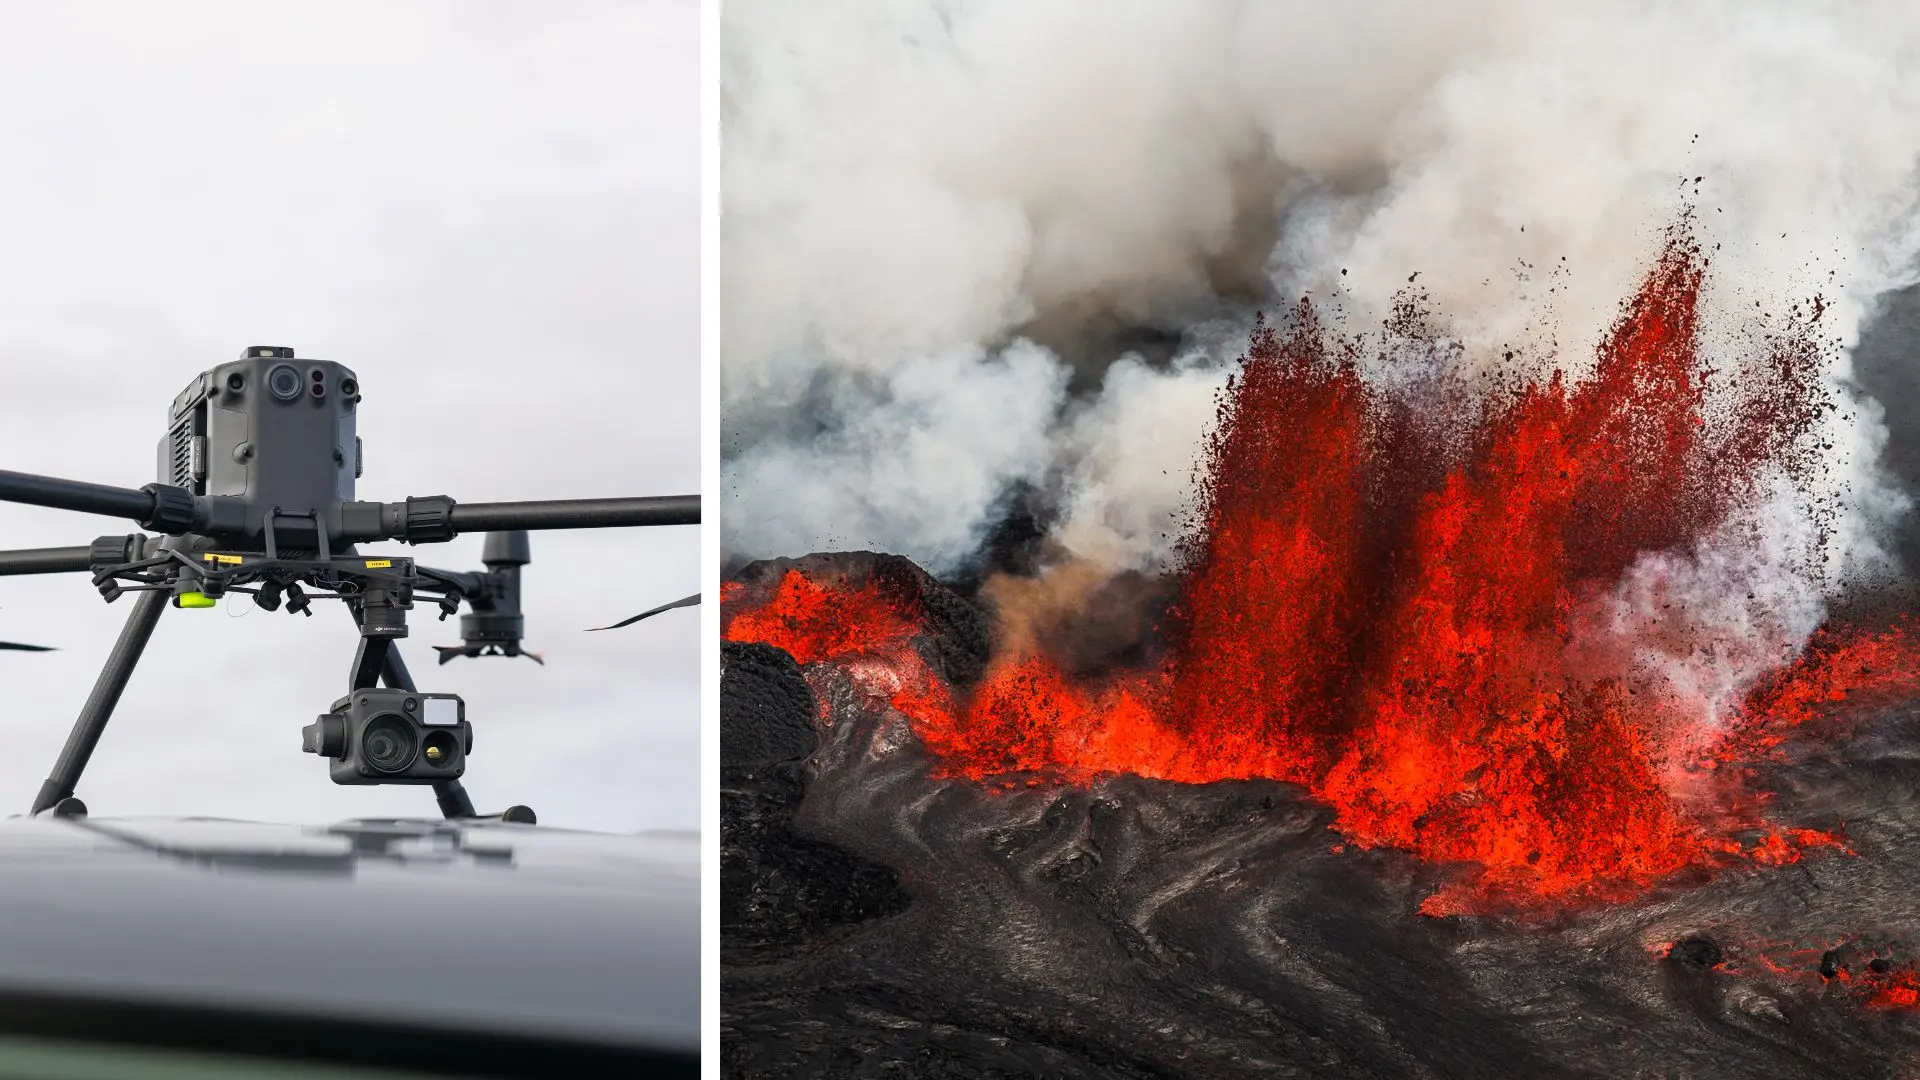 Las erupciones volcánicas son un problema en Islandia, así que están utilizando drones para espiarlas